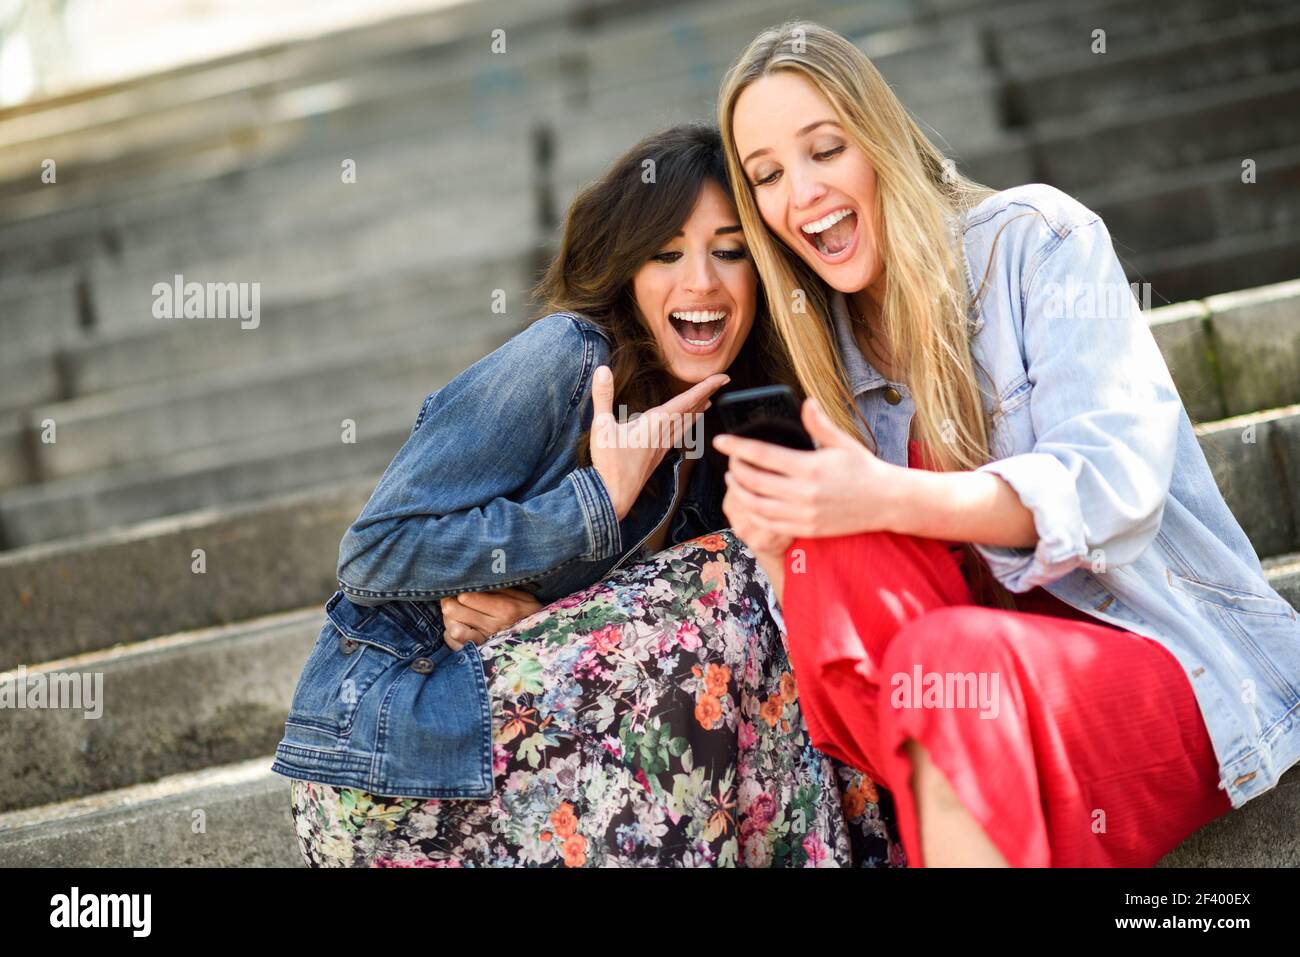 Zwei junge Frauen an etwas lustige Sache auf Ihre Smart Phone draussen, sitzen auf den städtischen Schritte. Freunde Mädchen lachend. Stockfoto